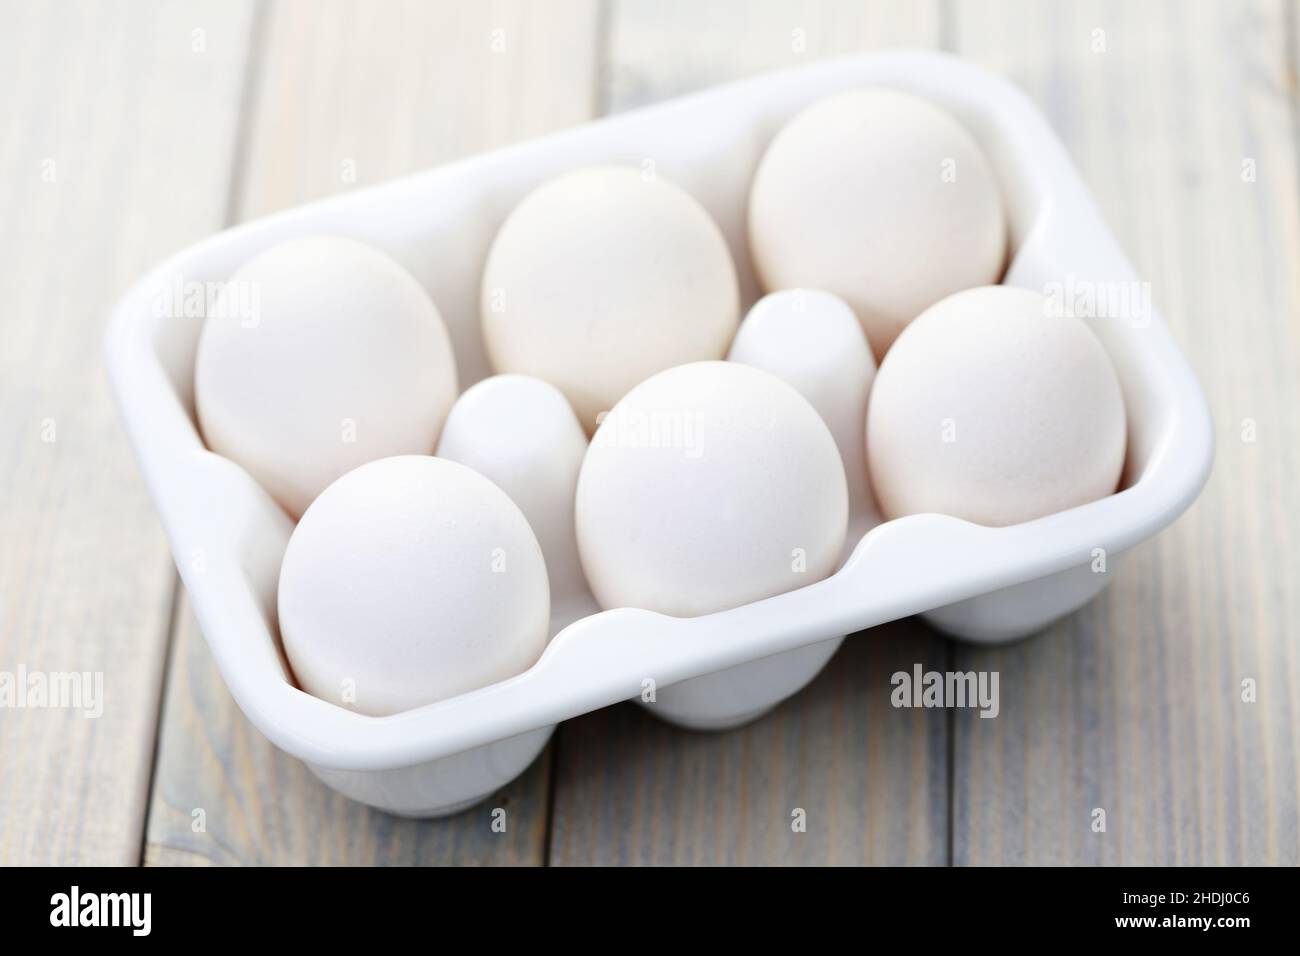 œuf, une demi-douzaine, œufs, une demi-douzaine Banque D'Images